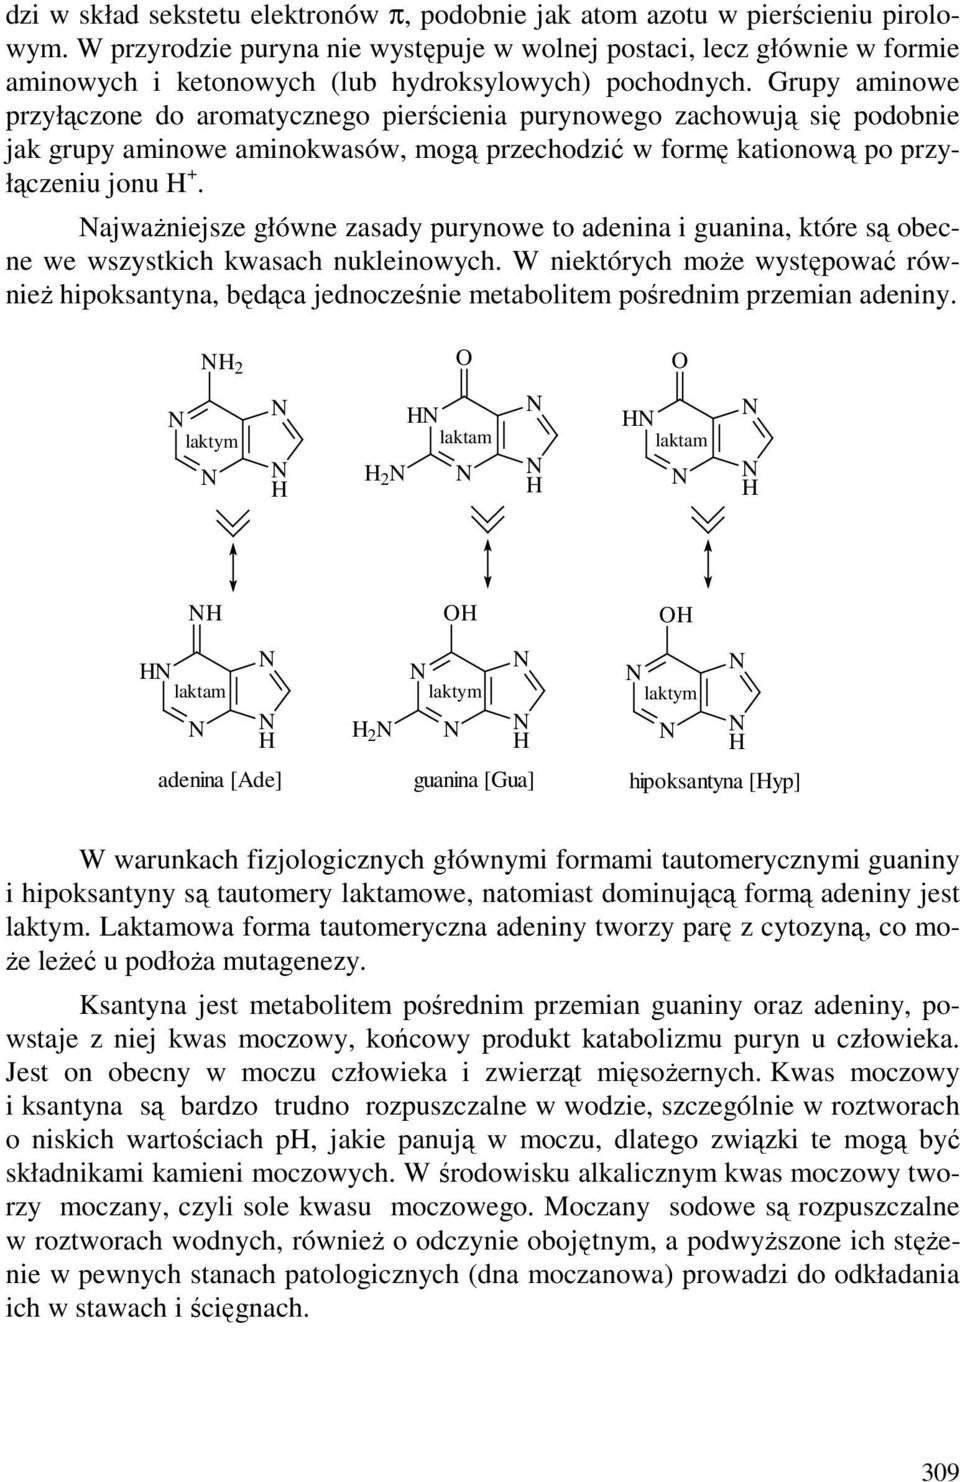 Grupy aminowe przyłączone do aromatycznego pierścienia purynowego zachowują się podobnie jak grupy aminowe aminokwasów, mogą przechodzić w formę kationową po przyłączeniu jonu +.